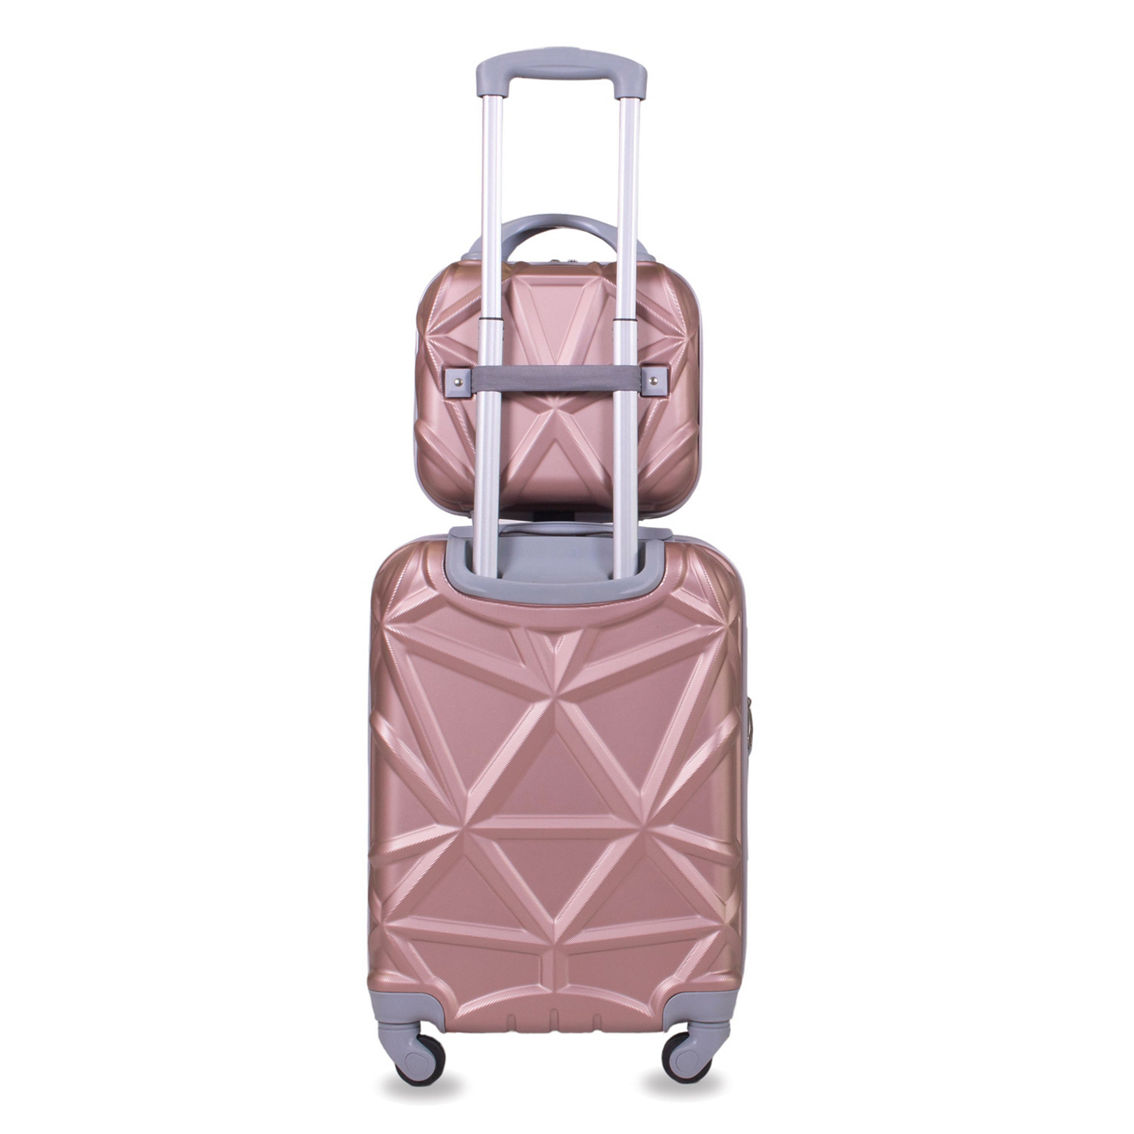 AMKA Gem 2-Pc. Carry-On Hardside Cosmetic Luggage Set - Image 2 of 5